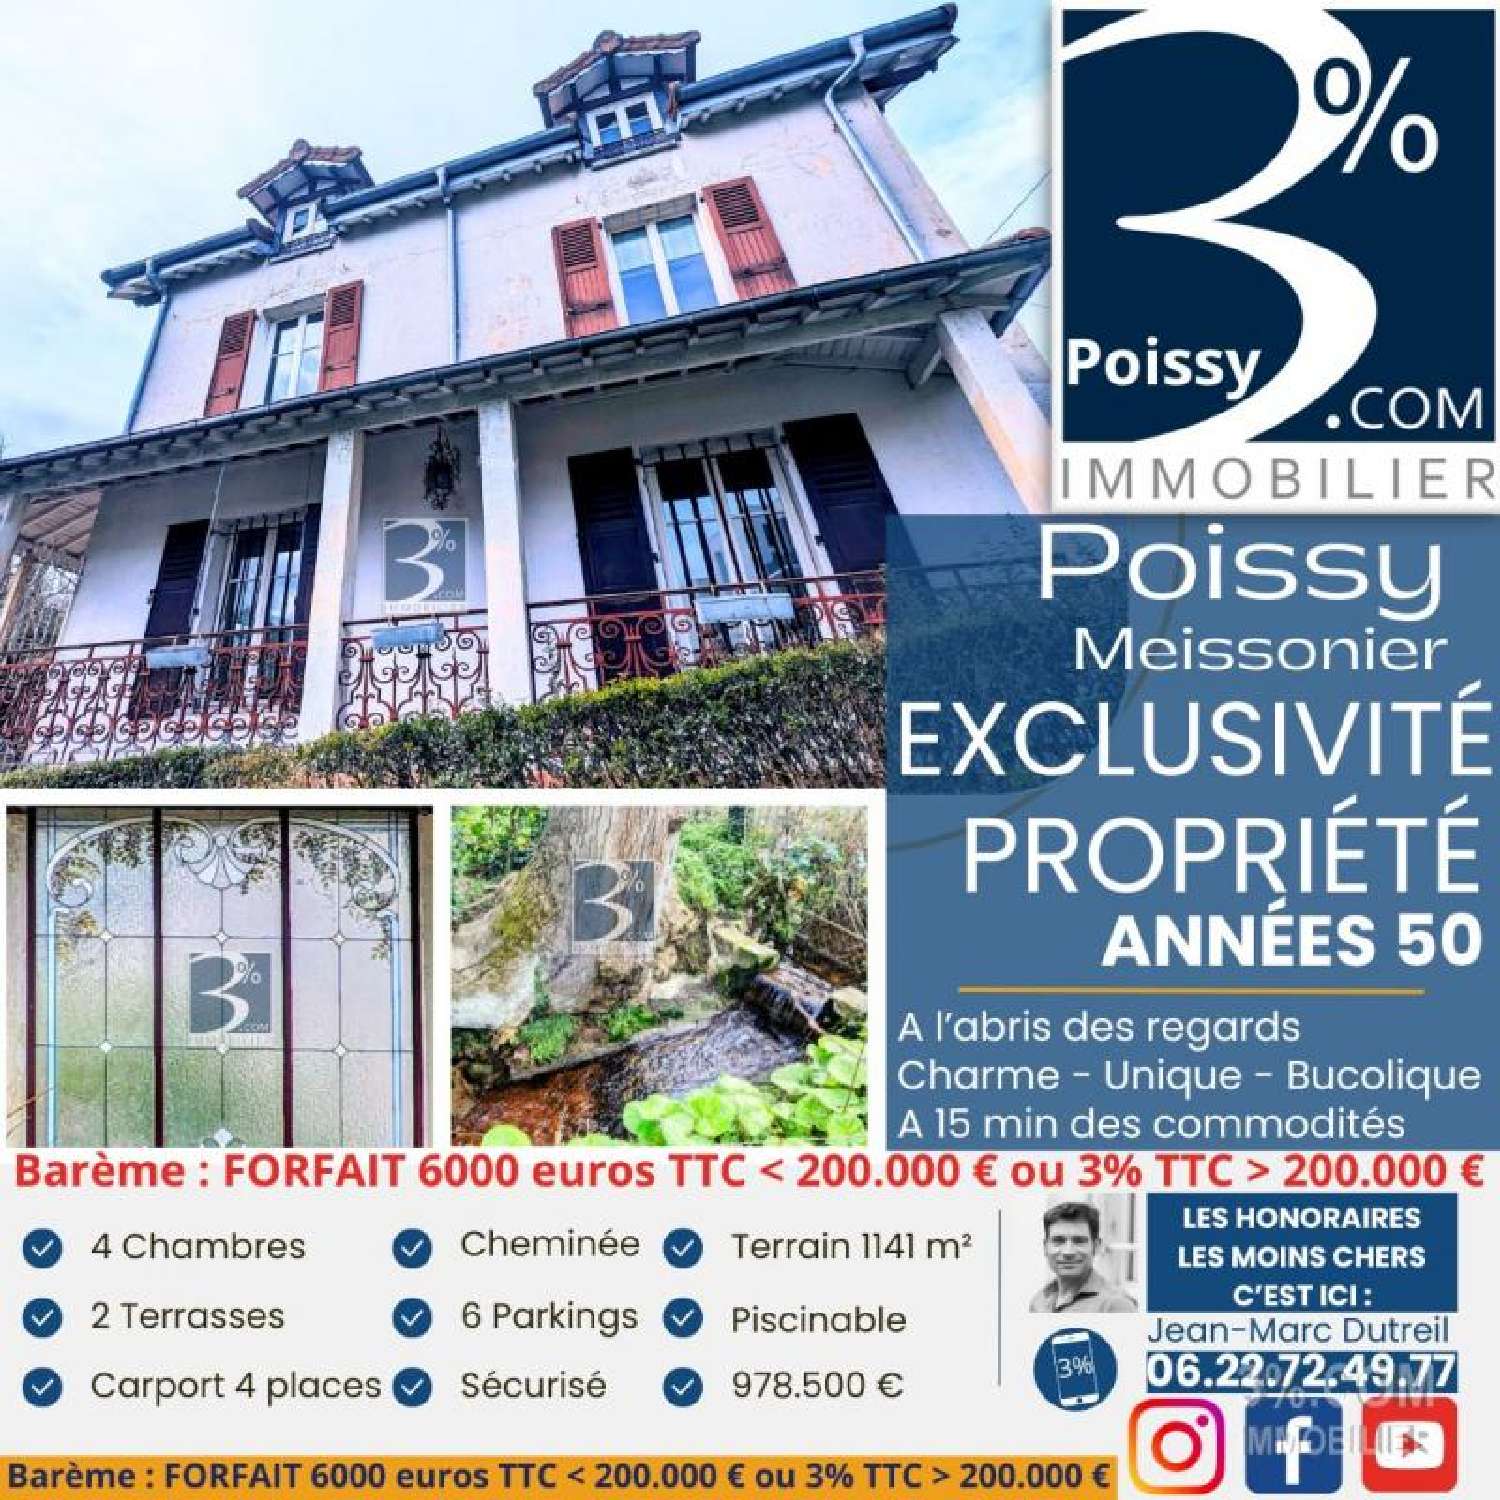 Poissy Yvelines house foto 6850213